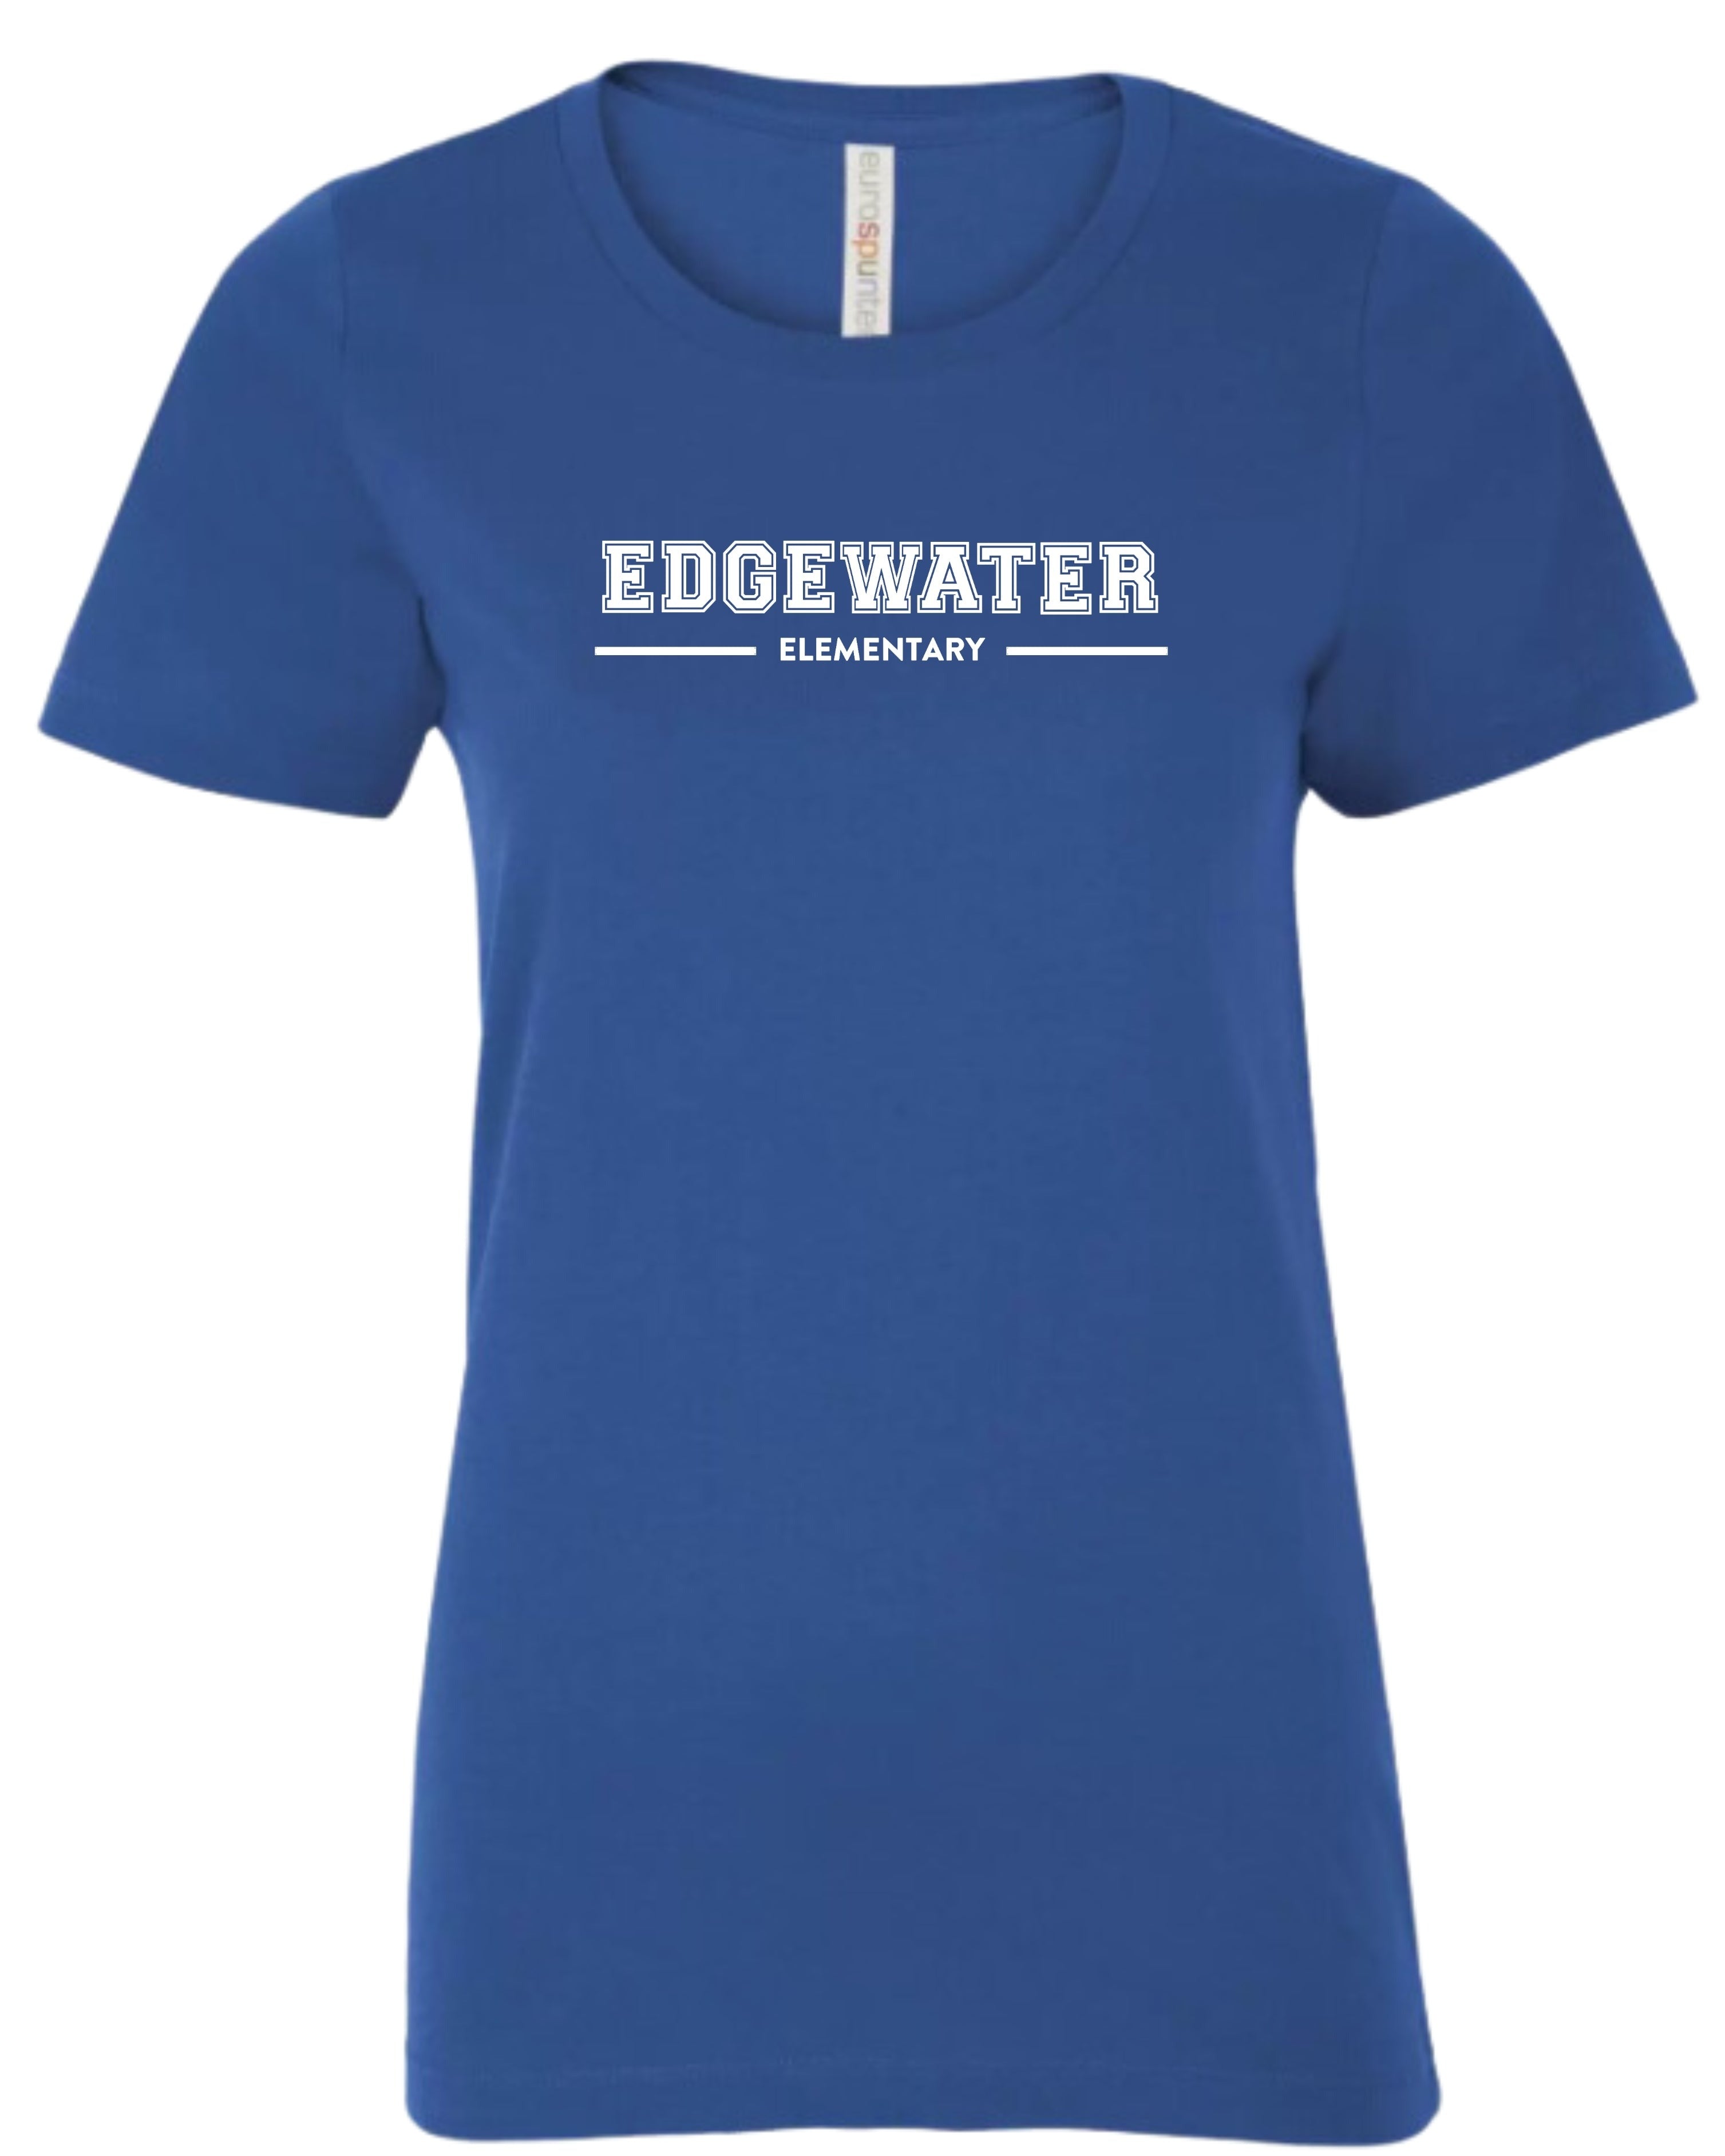 Edgewater Women's T-Shirt